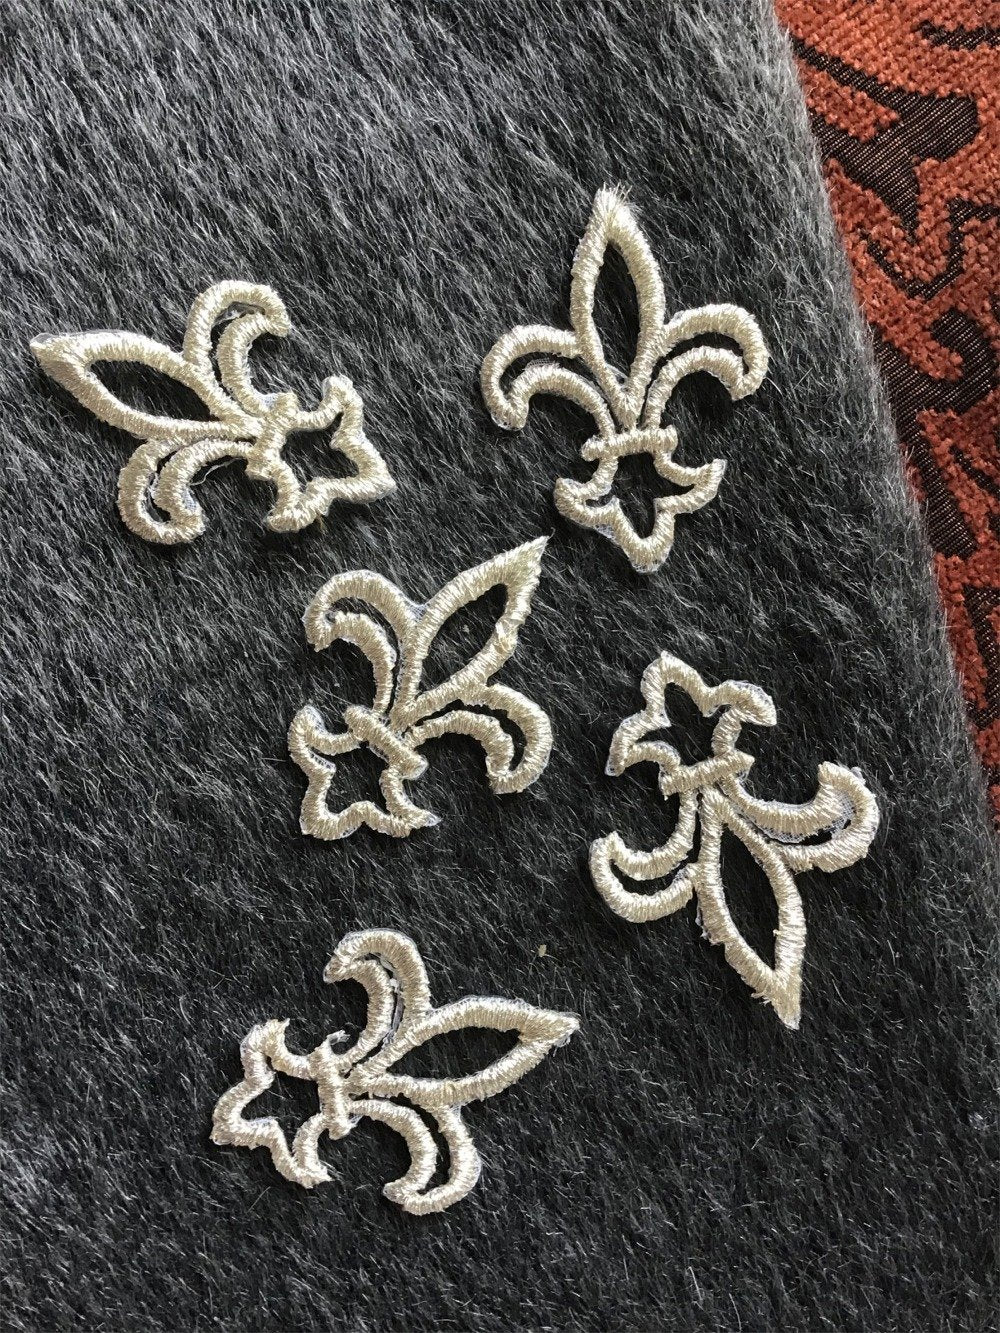 Metallic Silver Fleur-De-Lis Vintage Decorative Iron-on Embroidery Applique Patch #5088